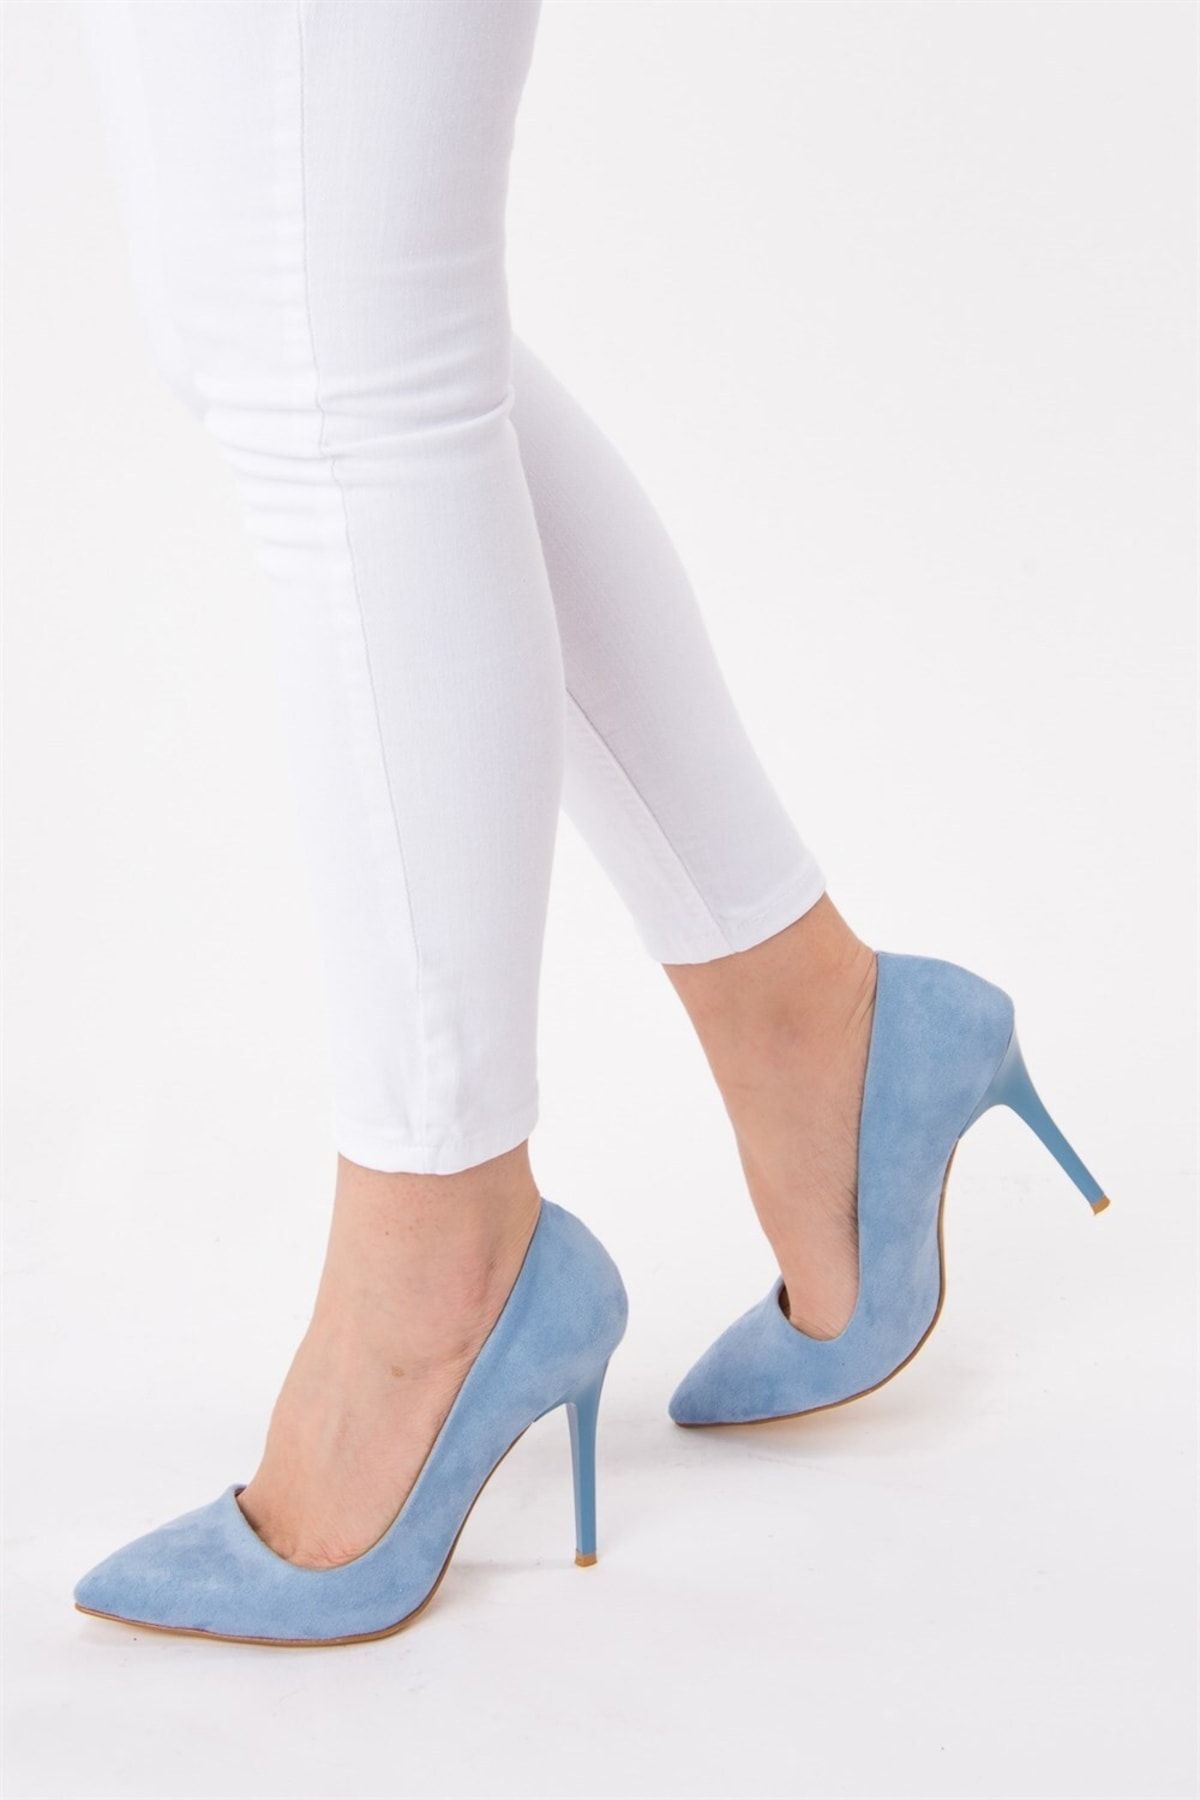 Fox Shoes Mavi Kadın Topuklu Ayakkabı 8922151902